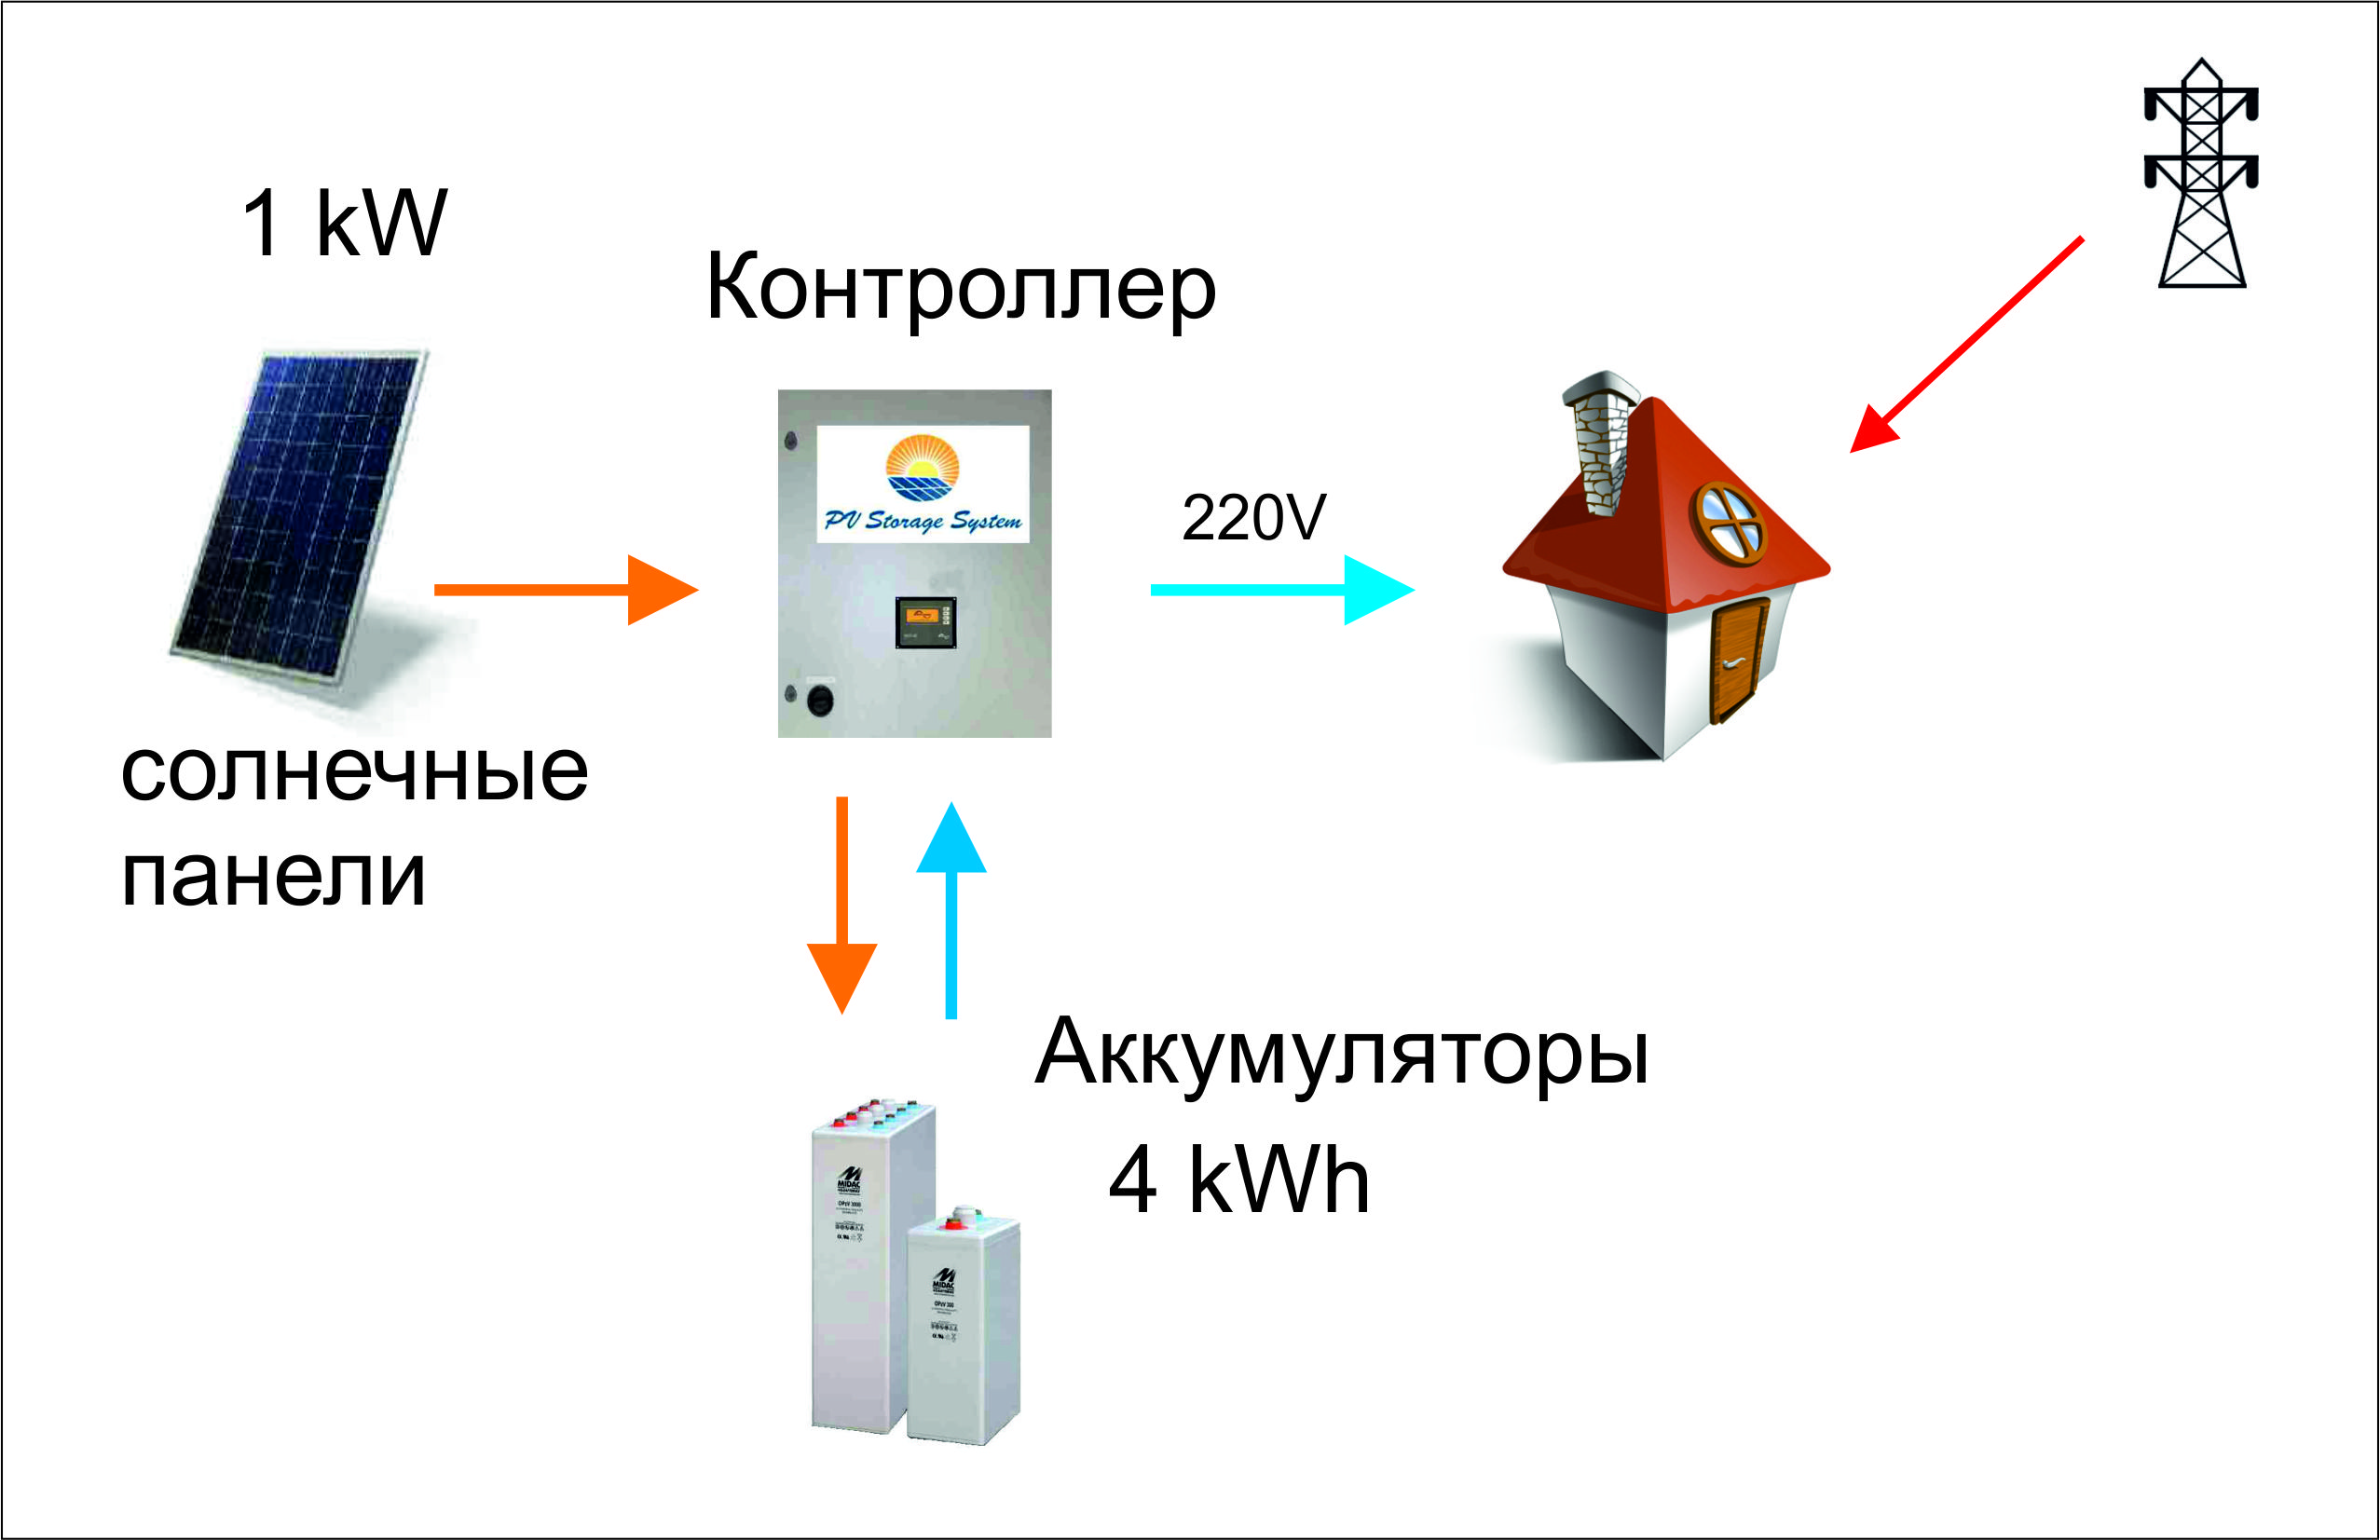 Контроллер энергонакопления для солнечной электростанции пиковой мощности 1 кВт.></div>
		<div class=